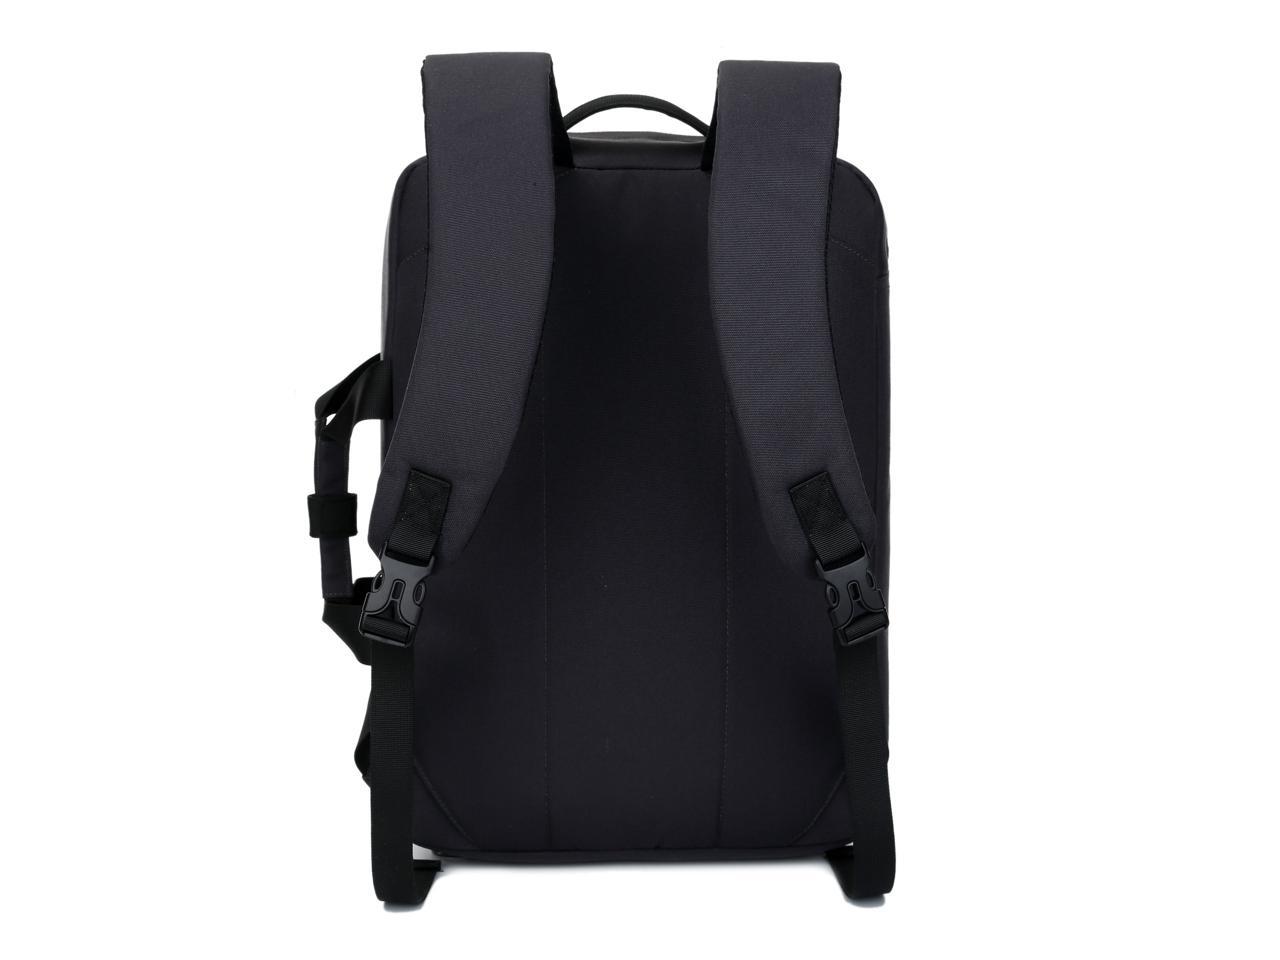 SONG Leisure Shoulder Backpack Computer Backpack Shoulder Bag Laptop Bag Leisure Shoulder Gift Light Grey 14.6